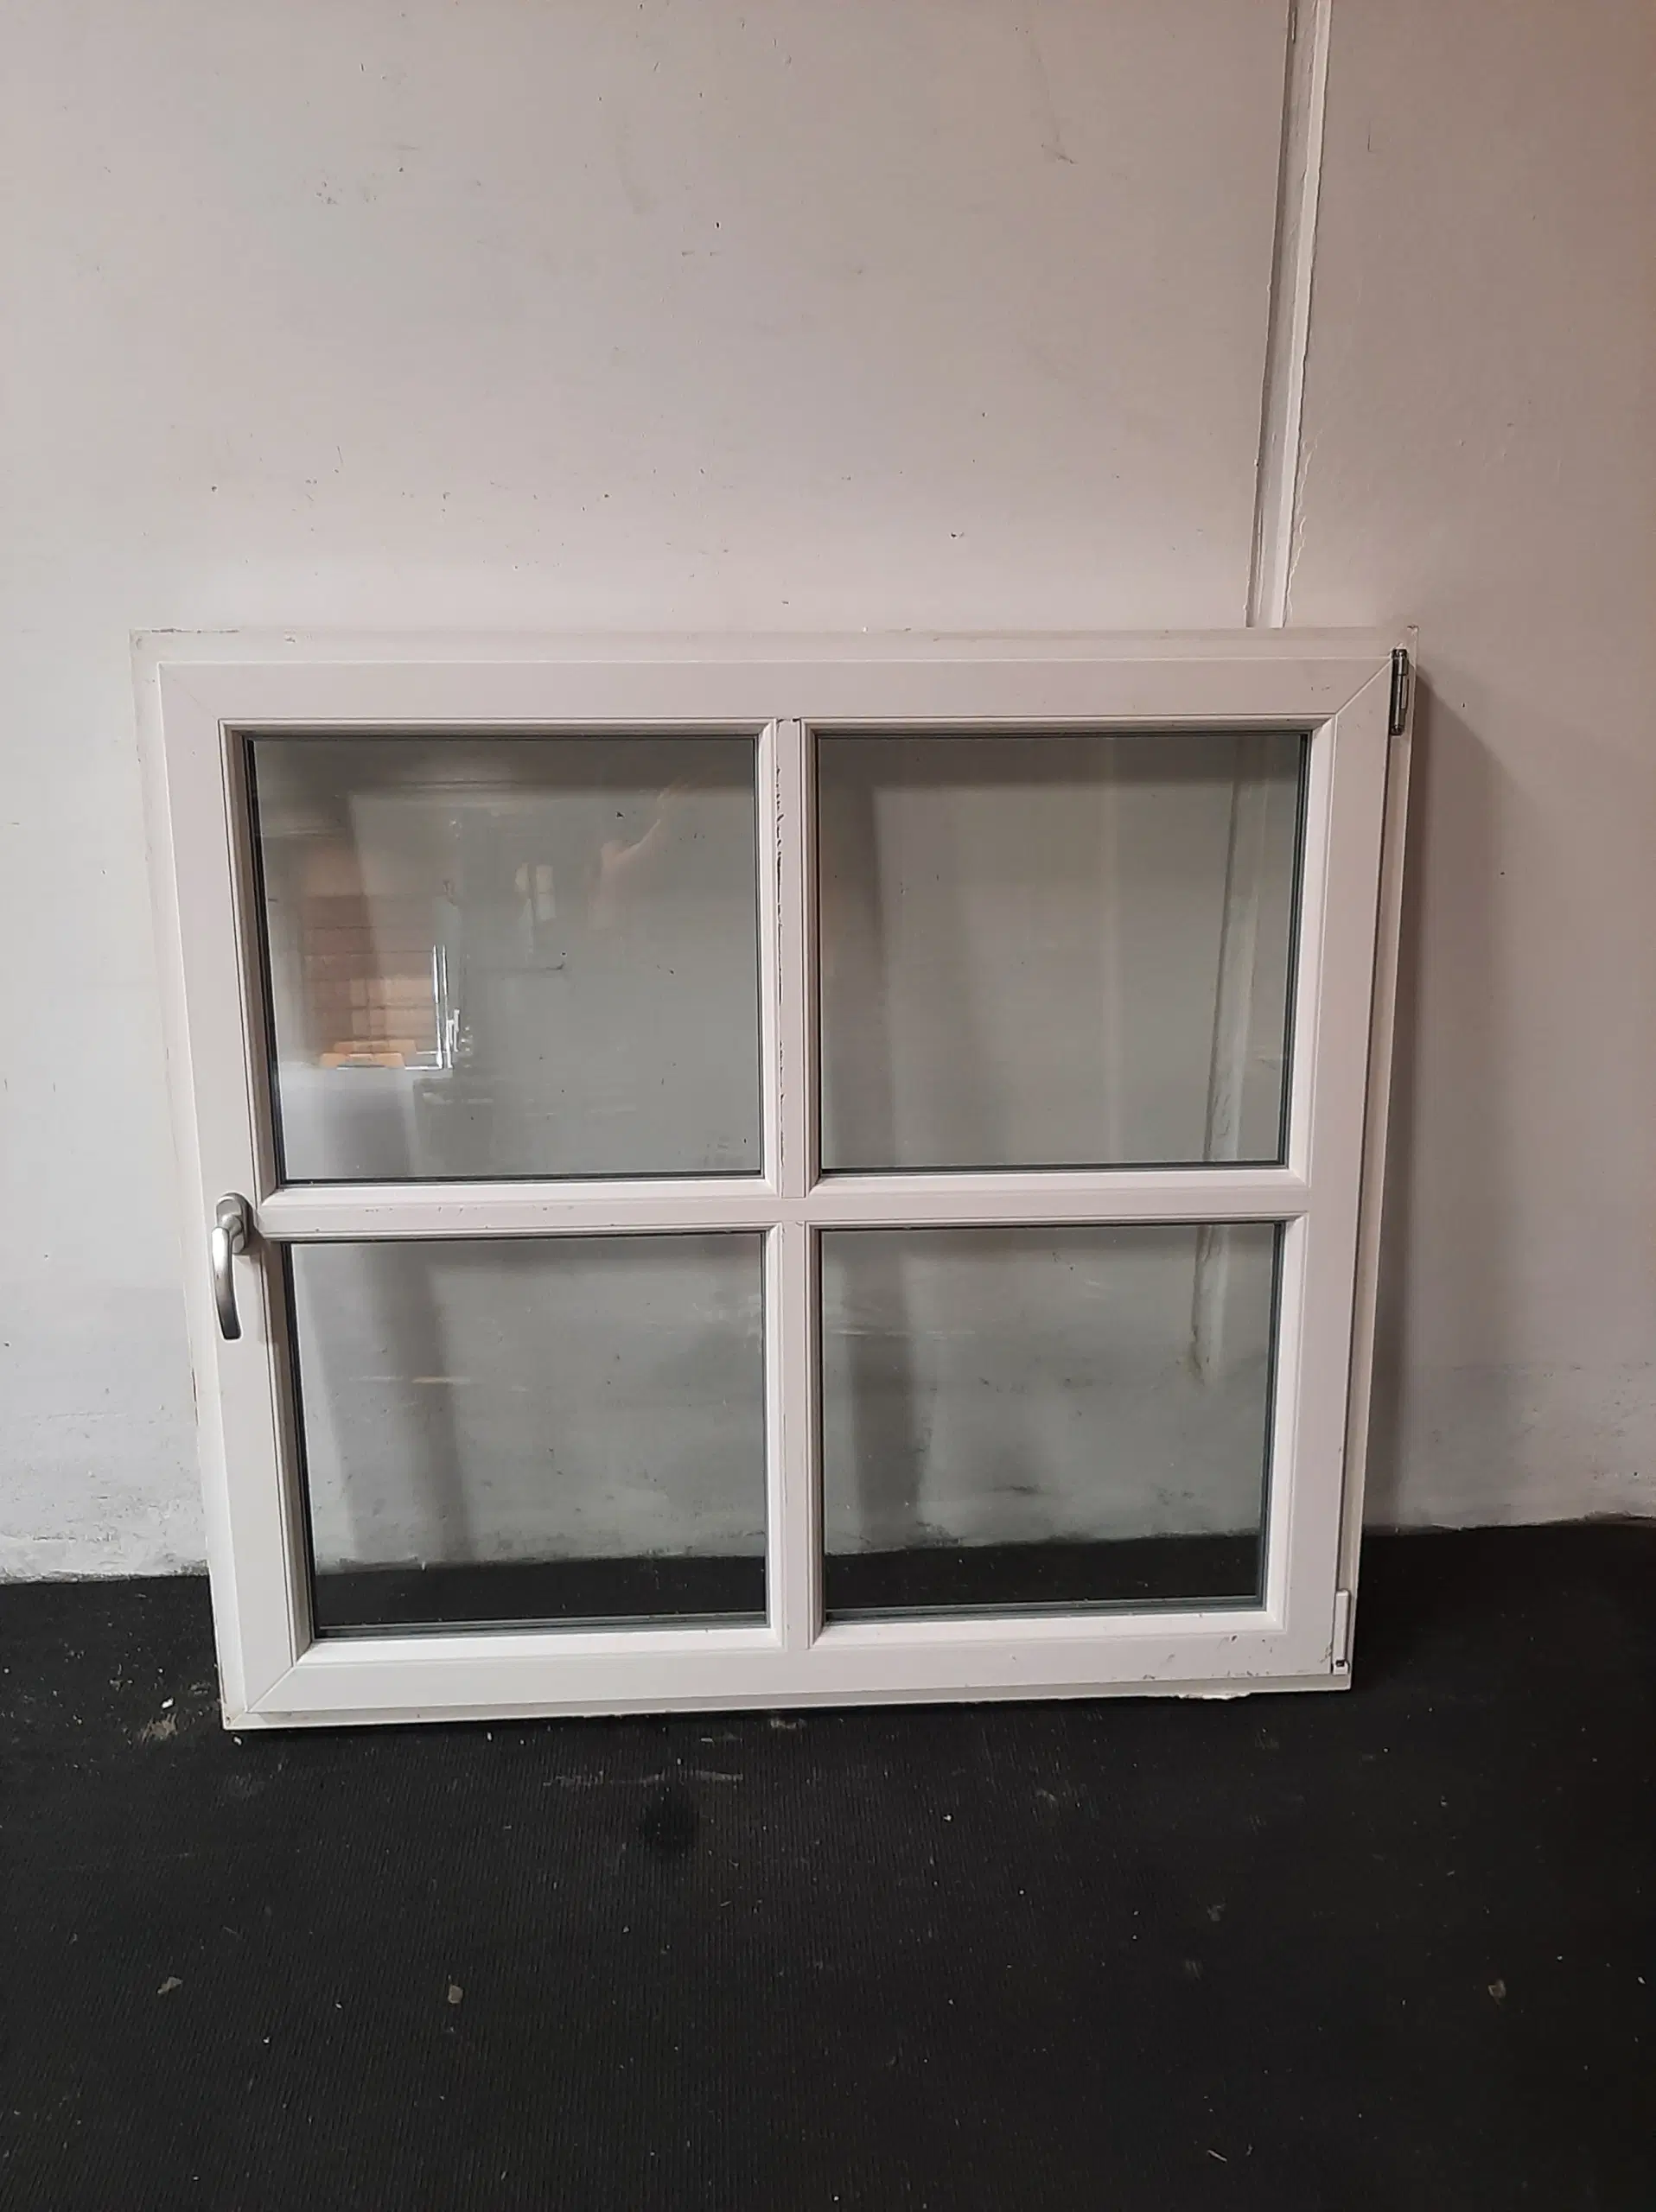 Dreje-kip vindue i pvc 1378x120x1278 mm højrehængt hvid